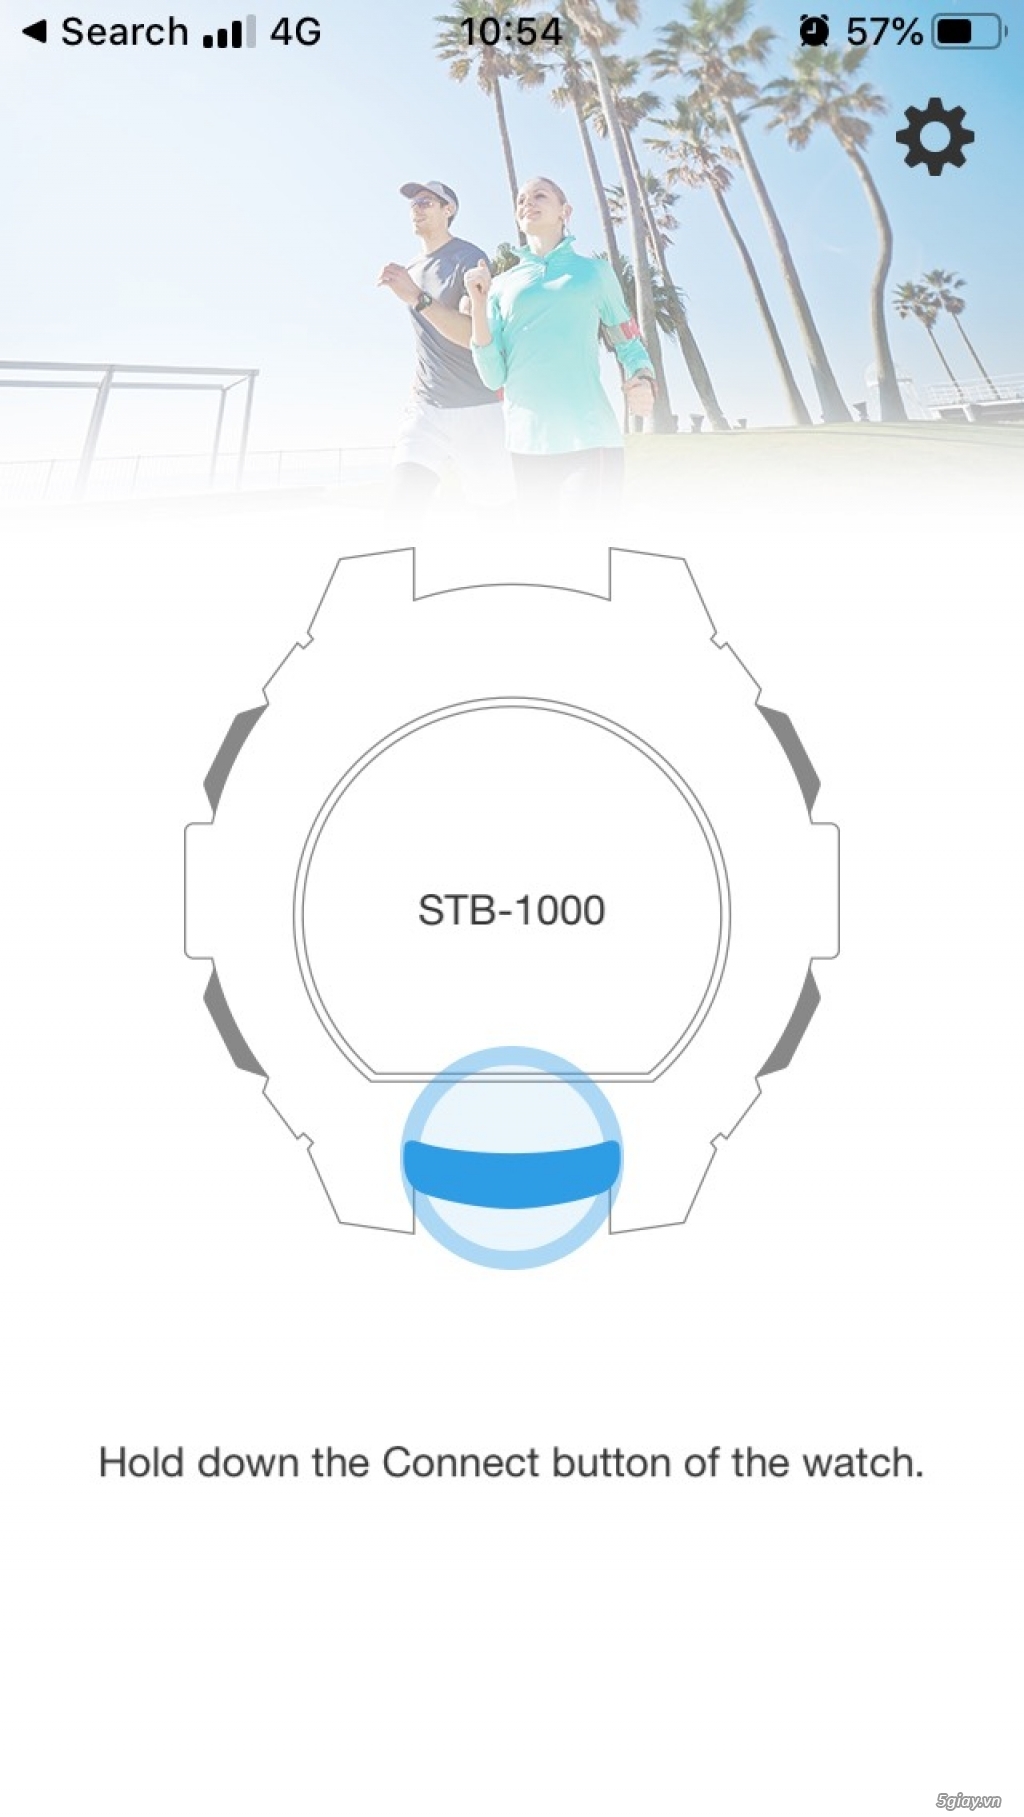 Đấu giá Đồng hồ Casio STB-1000 cũ. End 23:00 09.10.2019 - 1